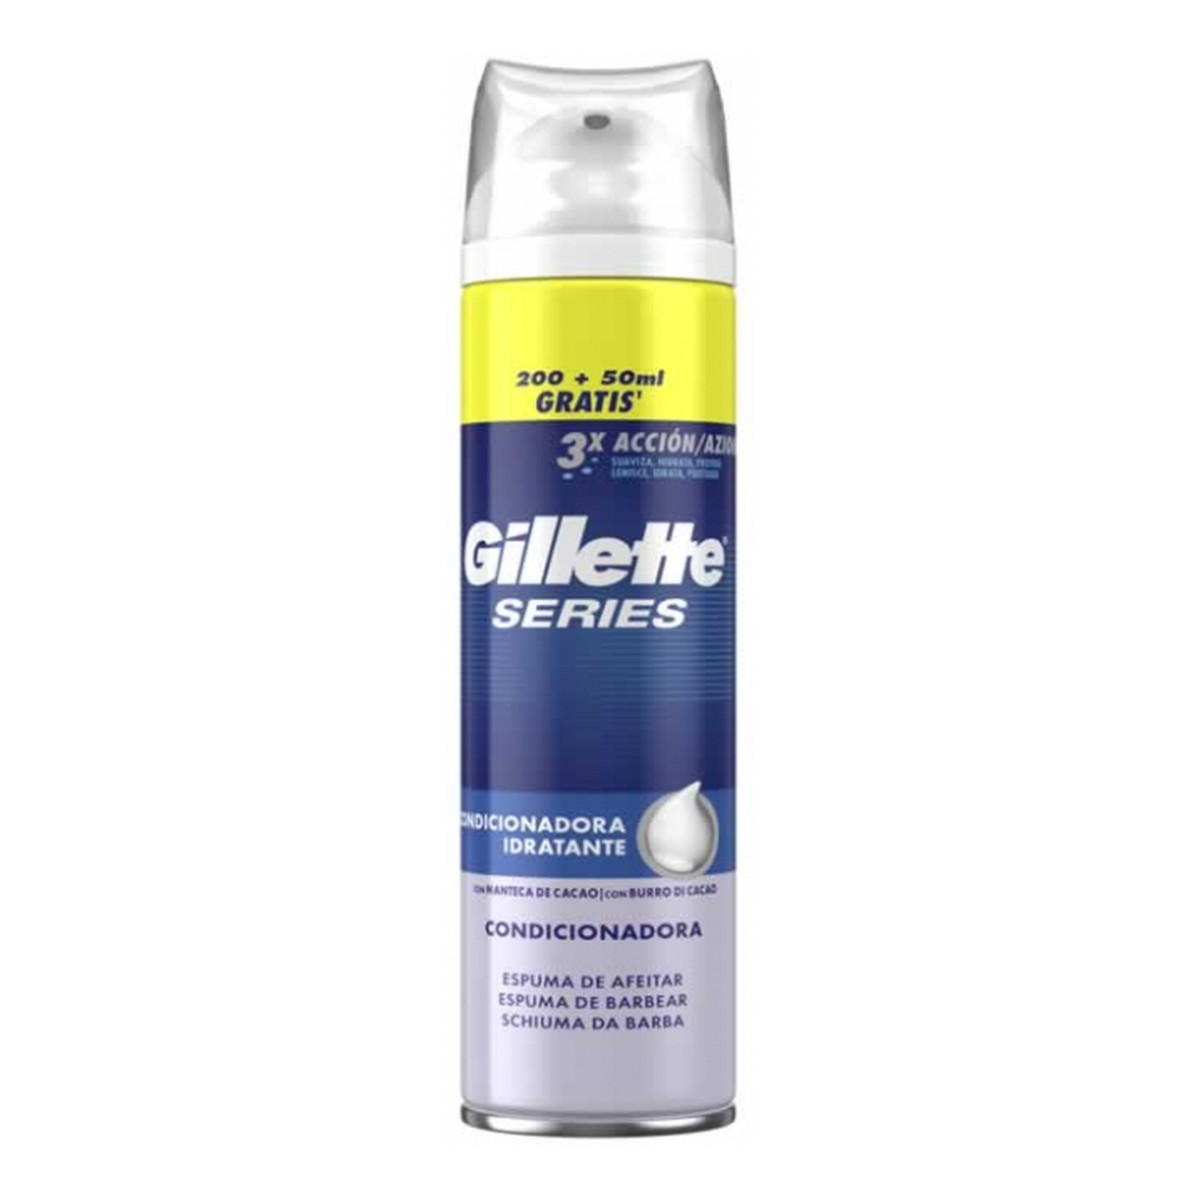 Gillette Series Conditioning pianka do golenia z masłem kakaowym 250ml